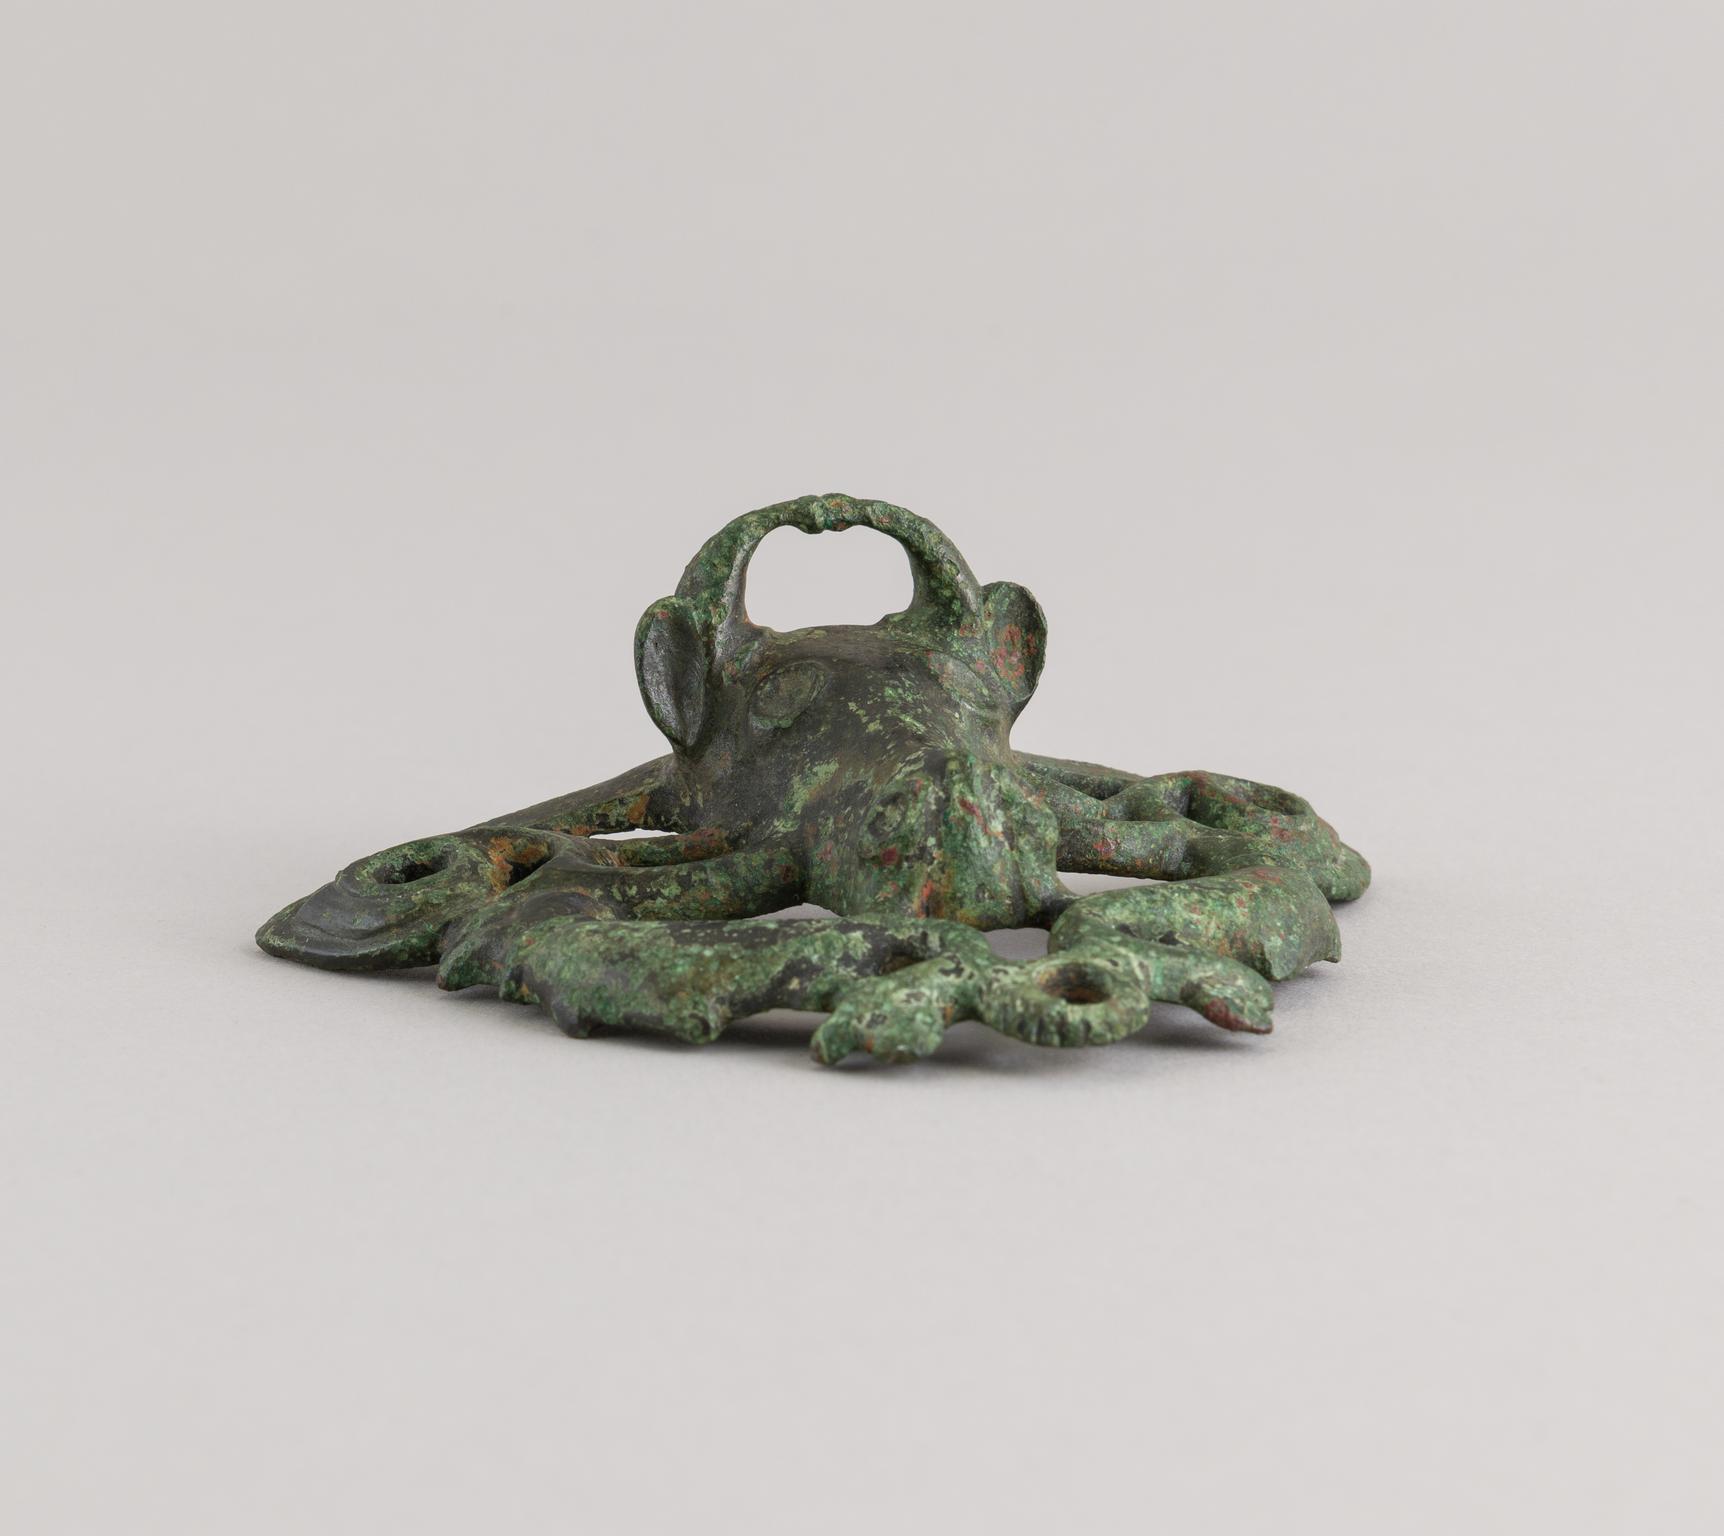 Roman copper alloy ox head escutcheon